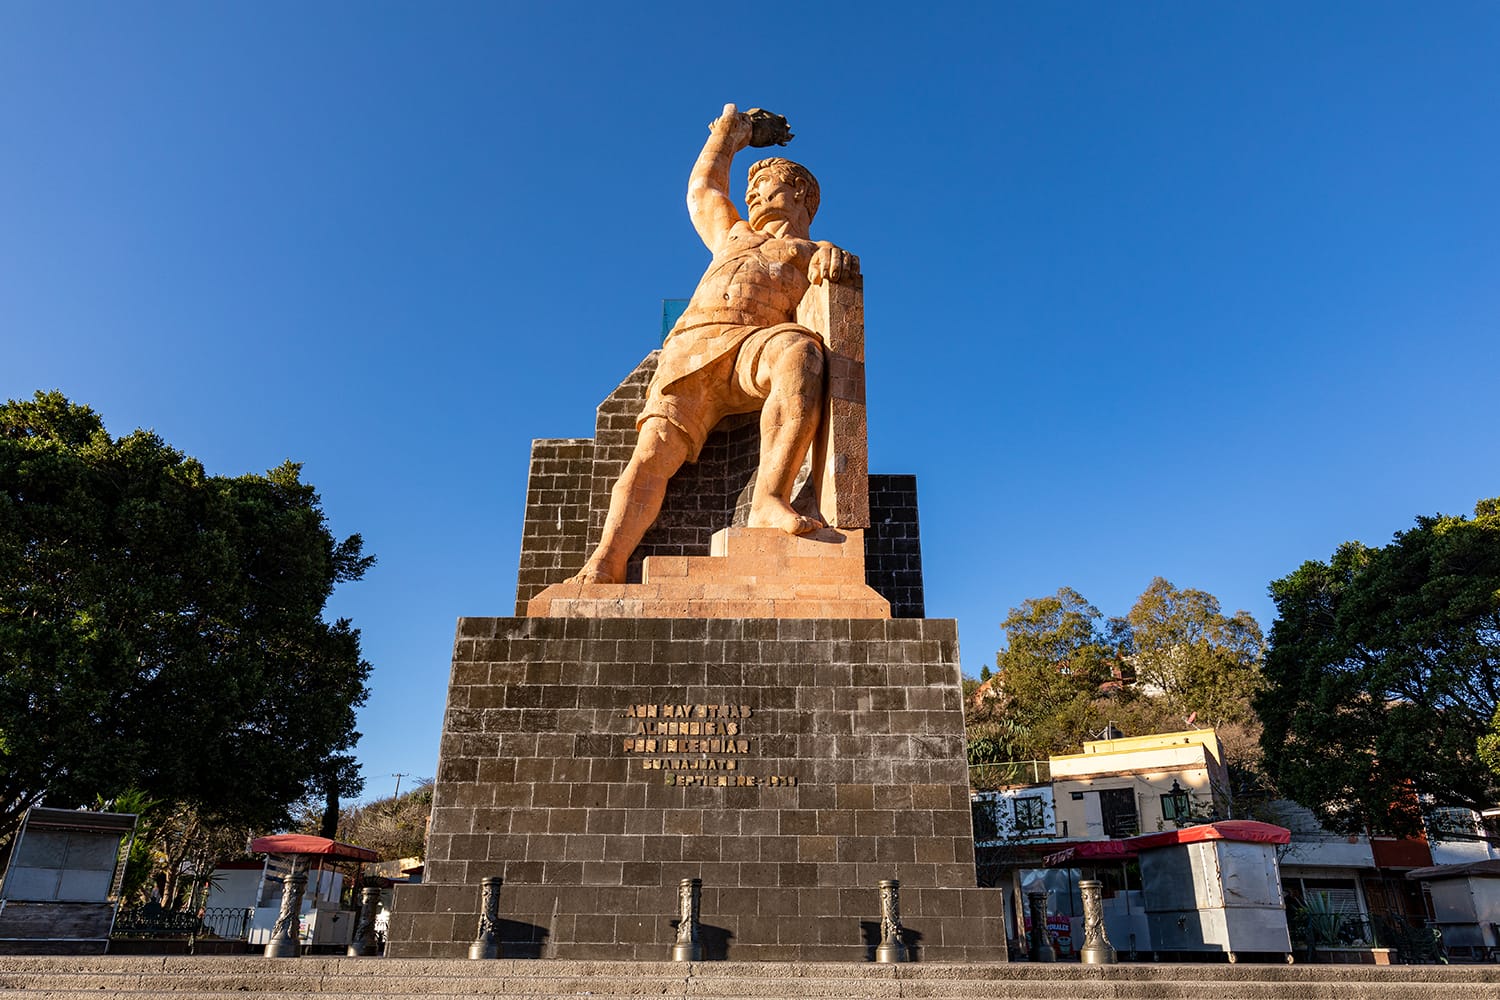 El Pipila Statue in Guanajuato, Mexico